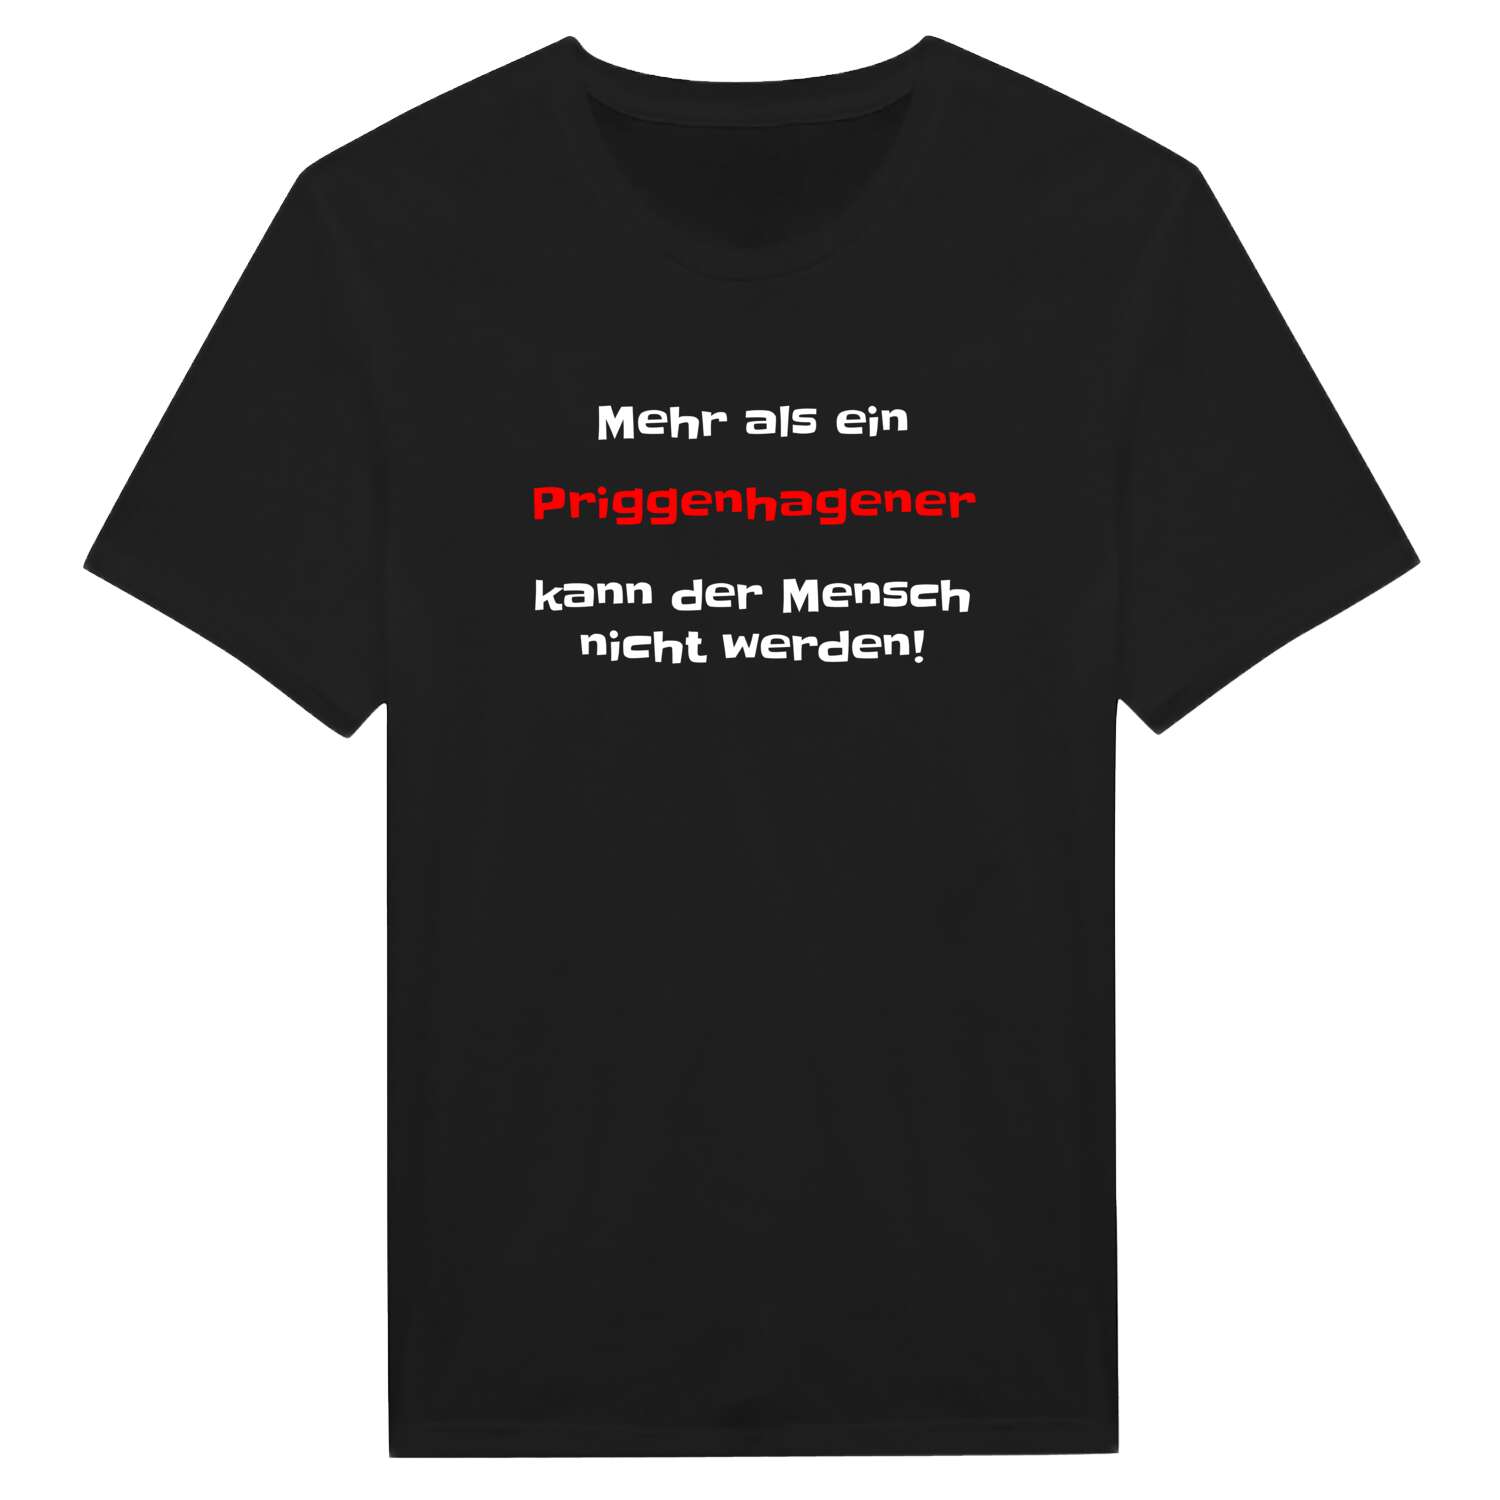 Priggenhagen T-Shirt »Mehr als ein«